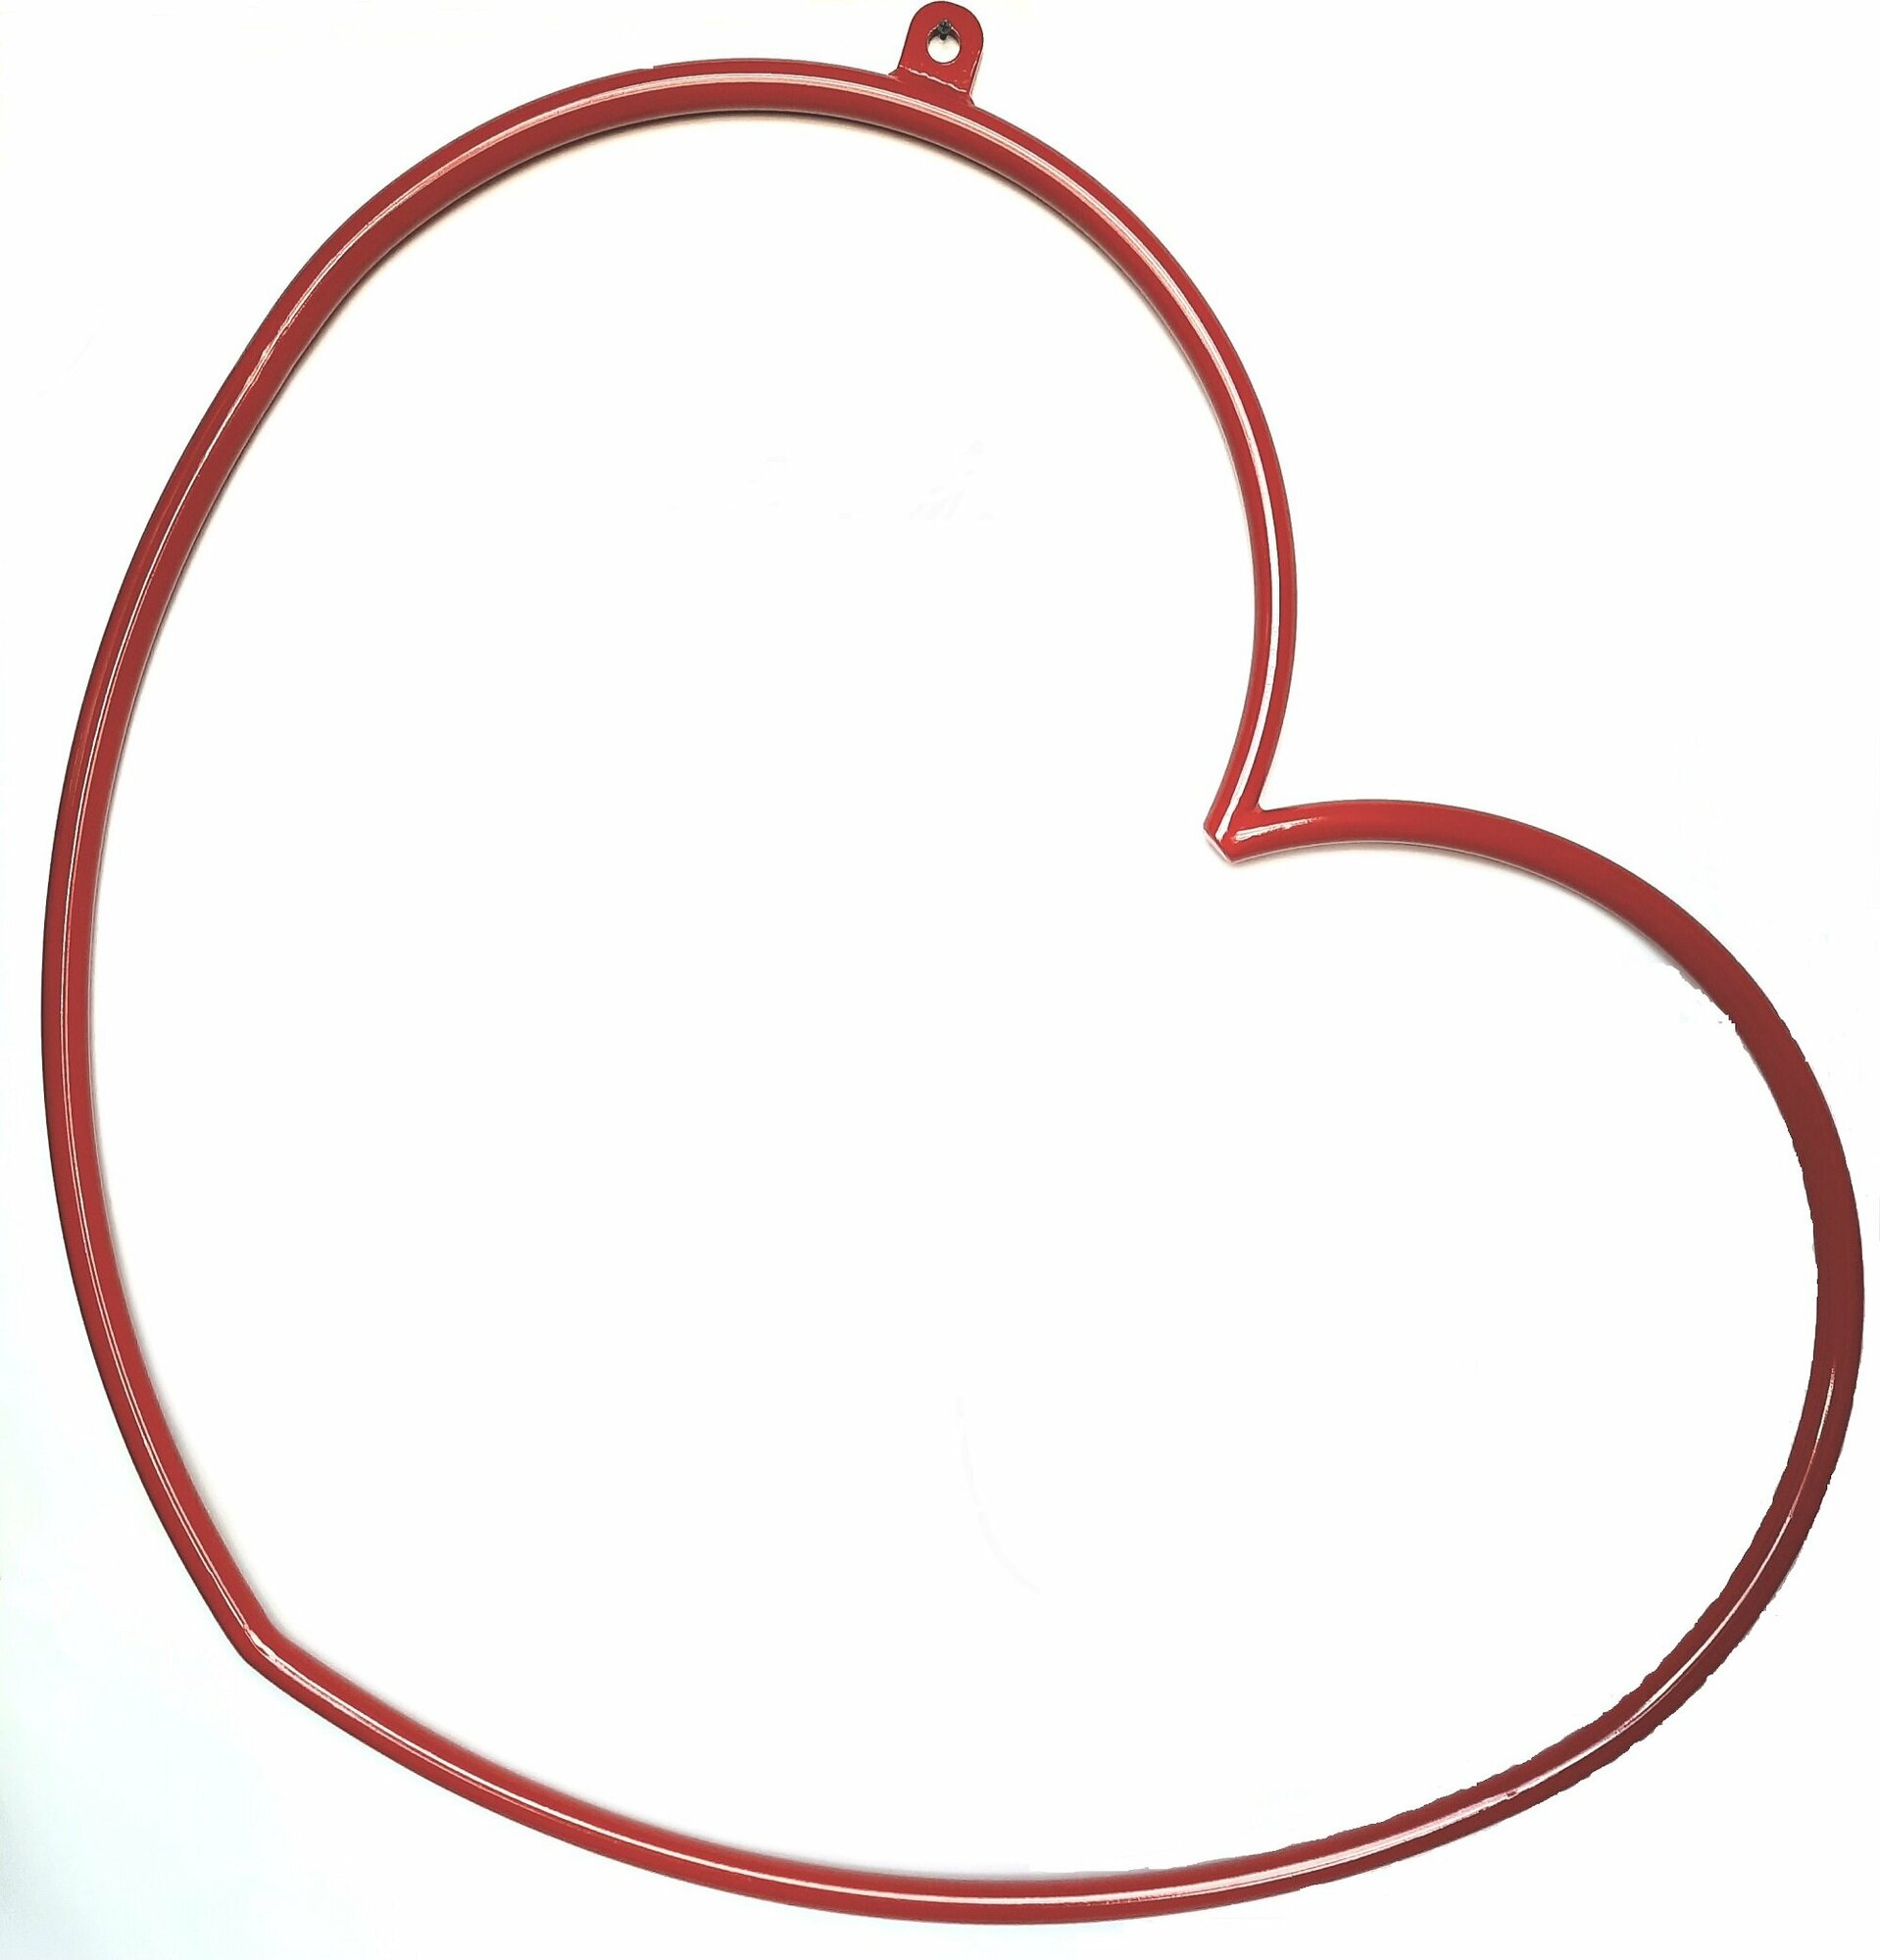 Металлическое сердце для воздушной гимнастики, с подвесом, цвет красный.